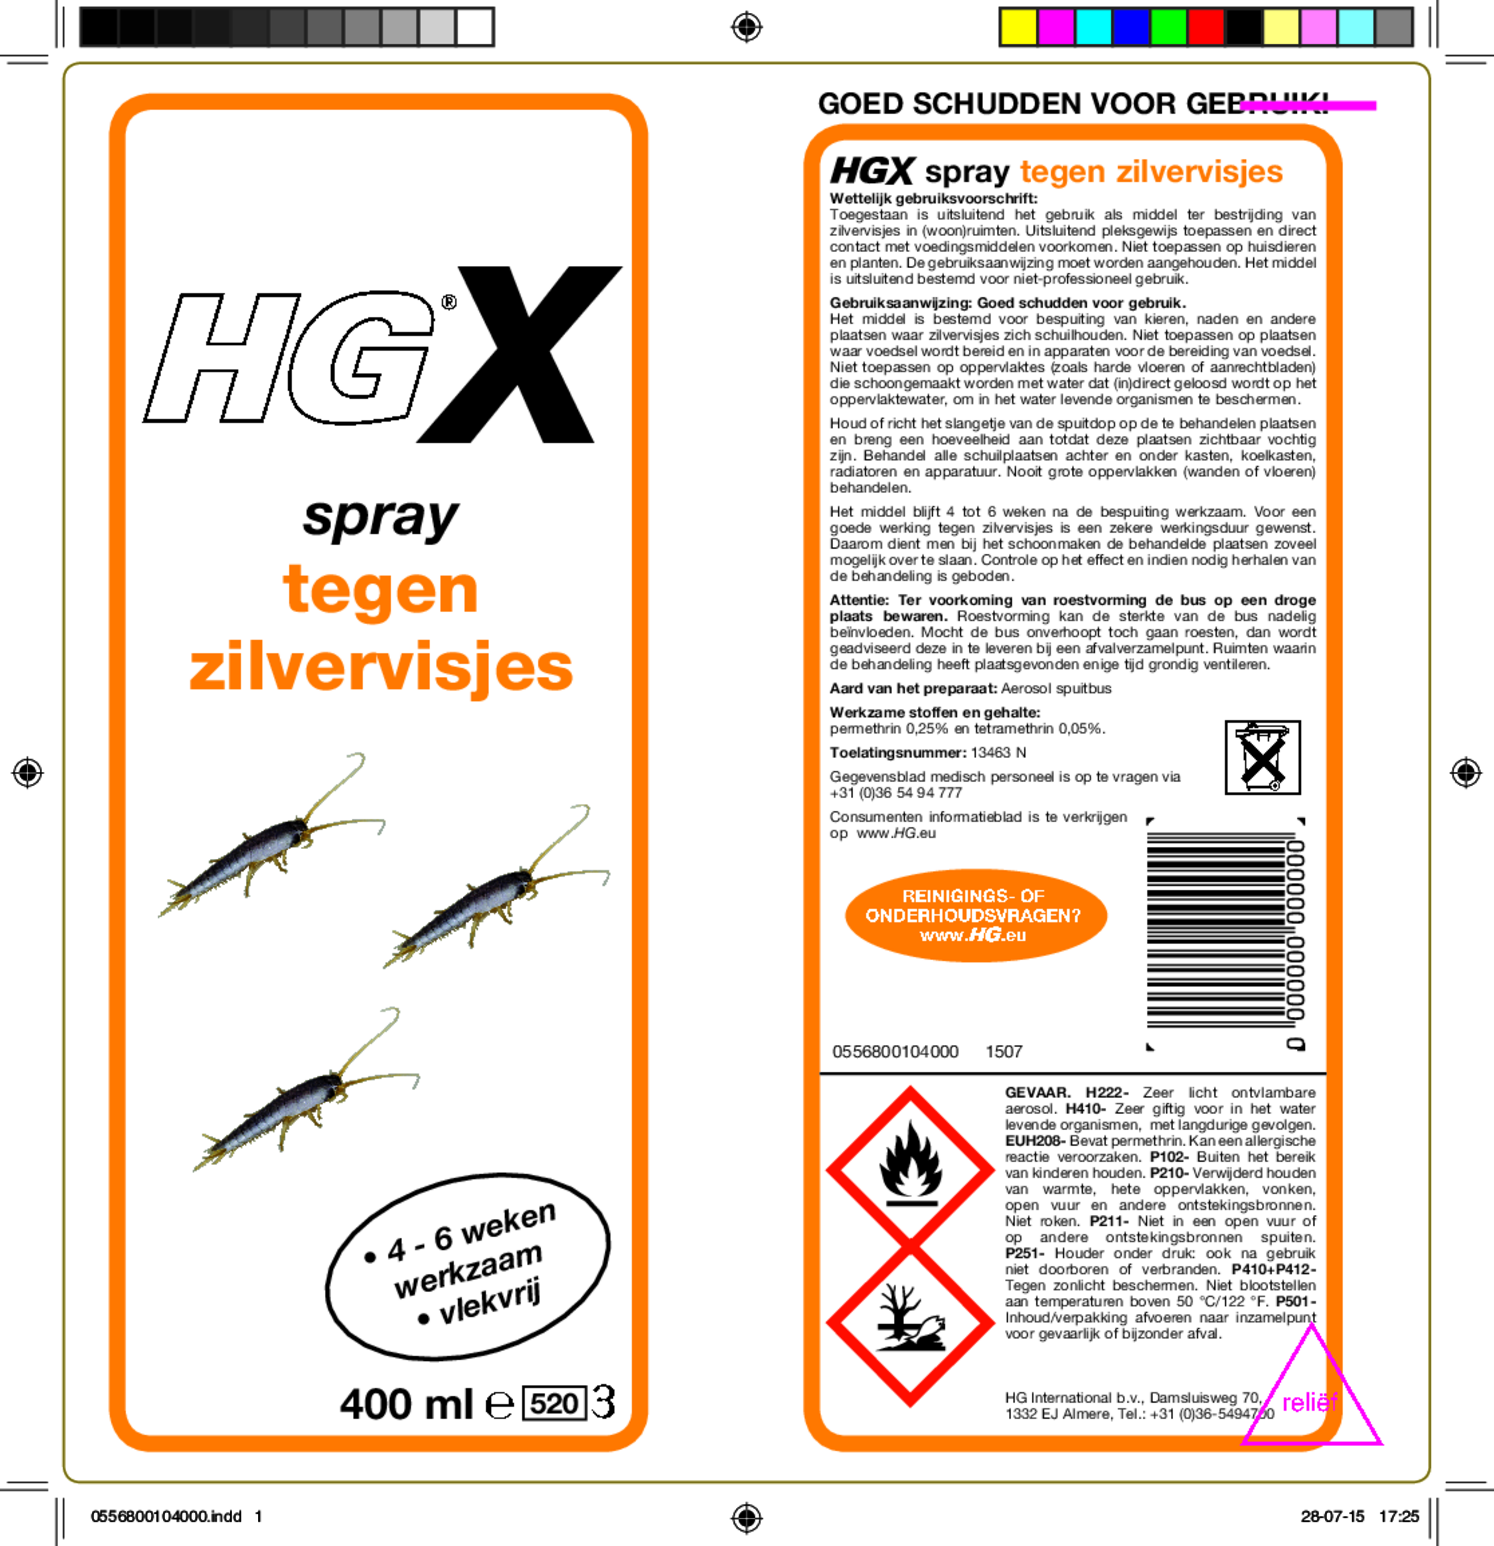 X Spray Tegen Zilvervisjes afbeelding van document #1, etiket